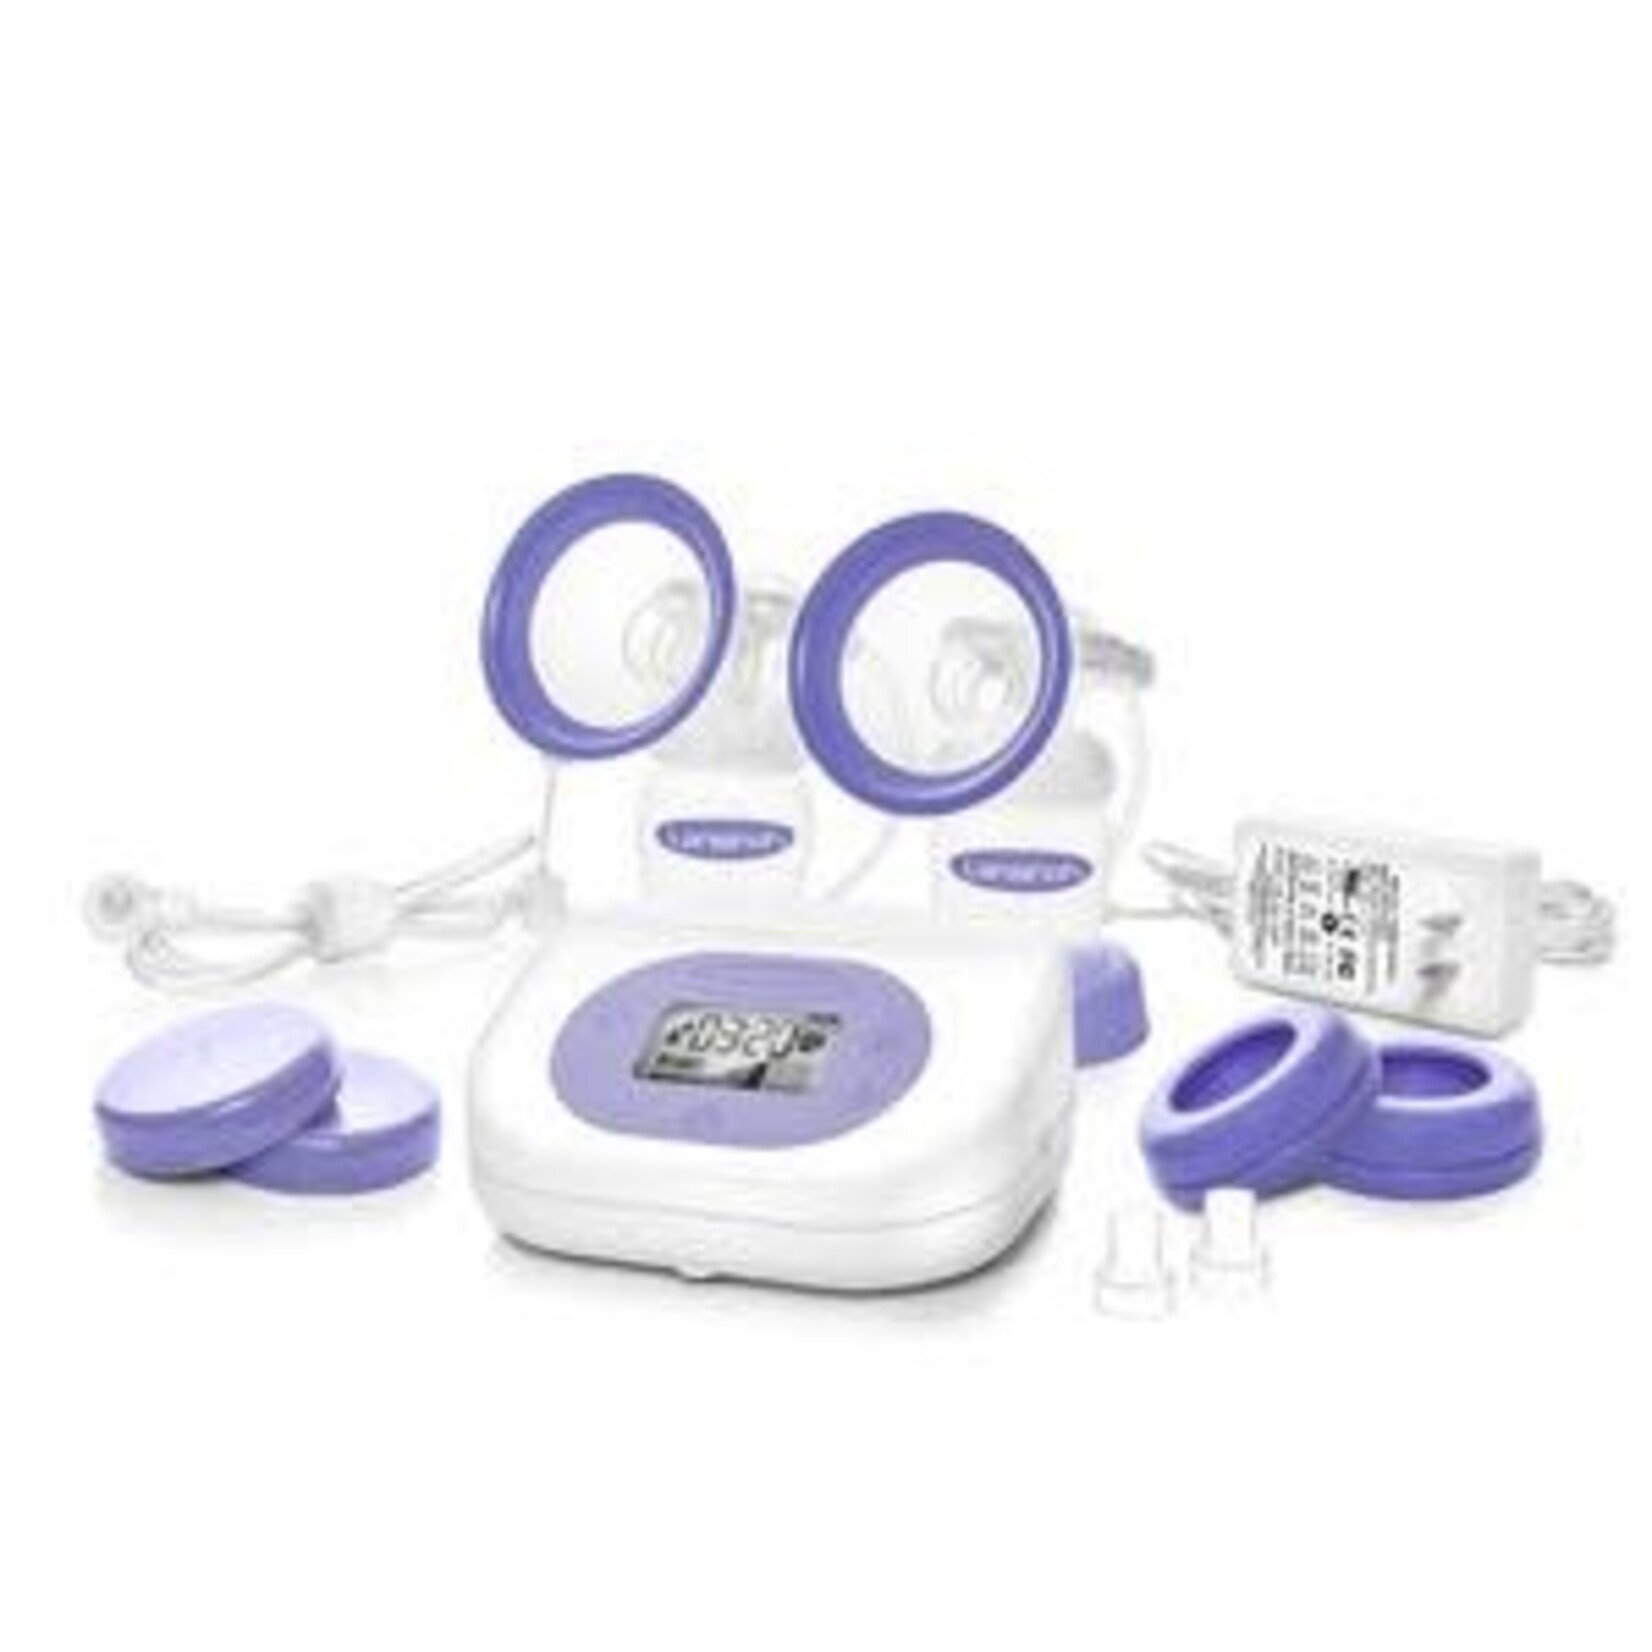 Lansinoh Lansinoh Smartpump 2.0 Double Electric Breast Pump Starter Set